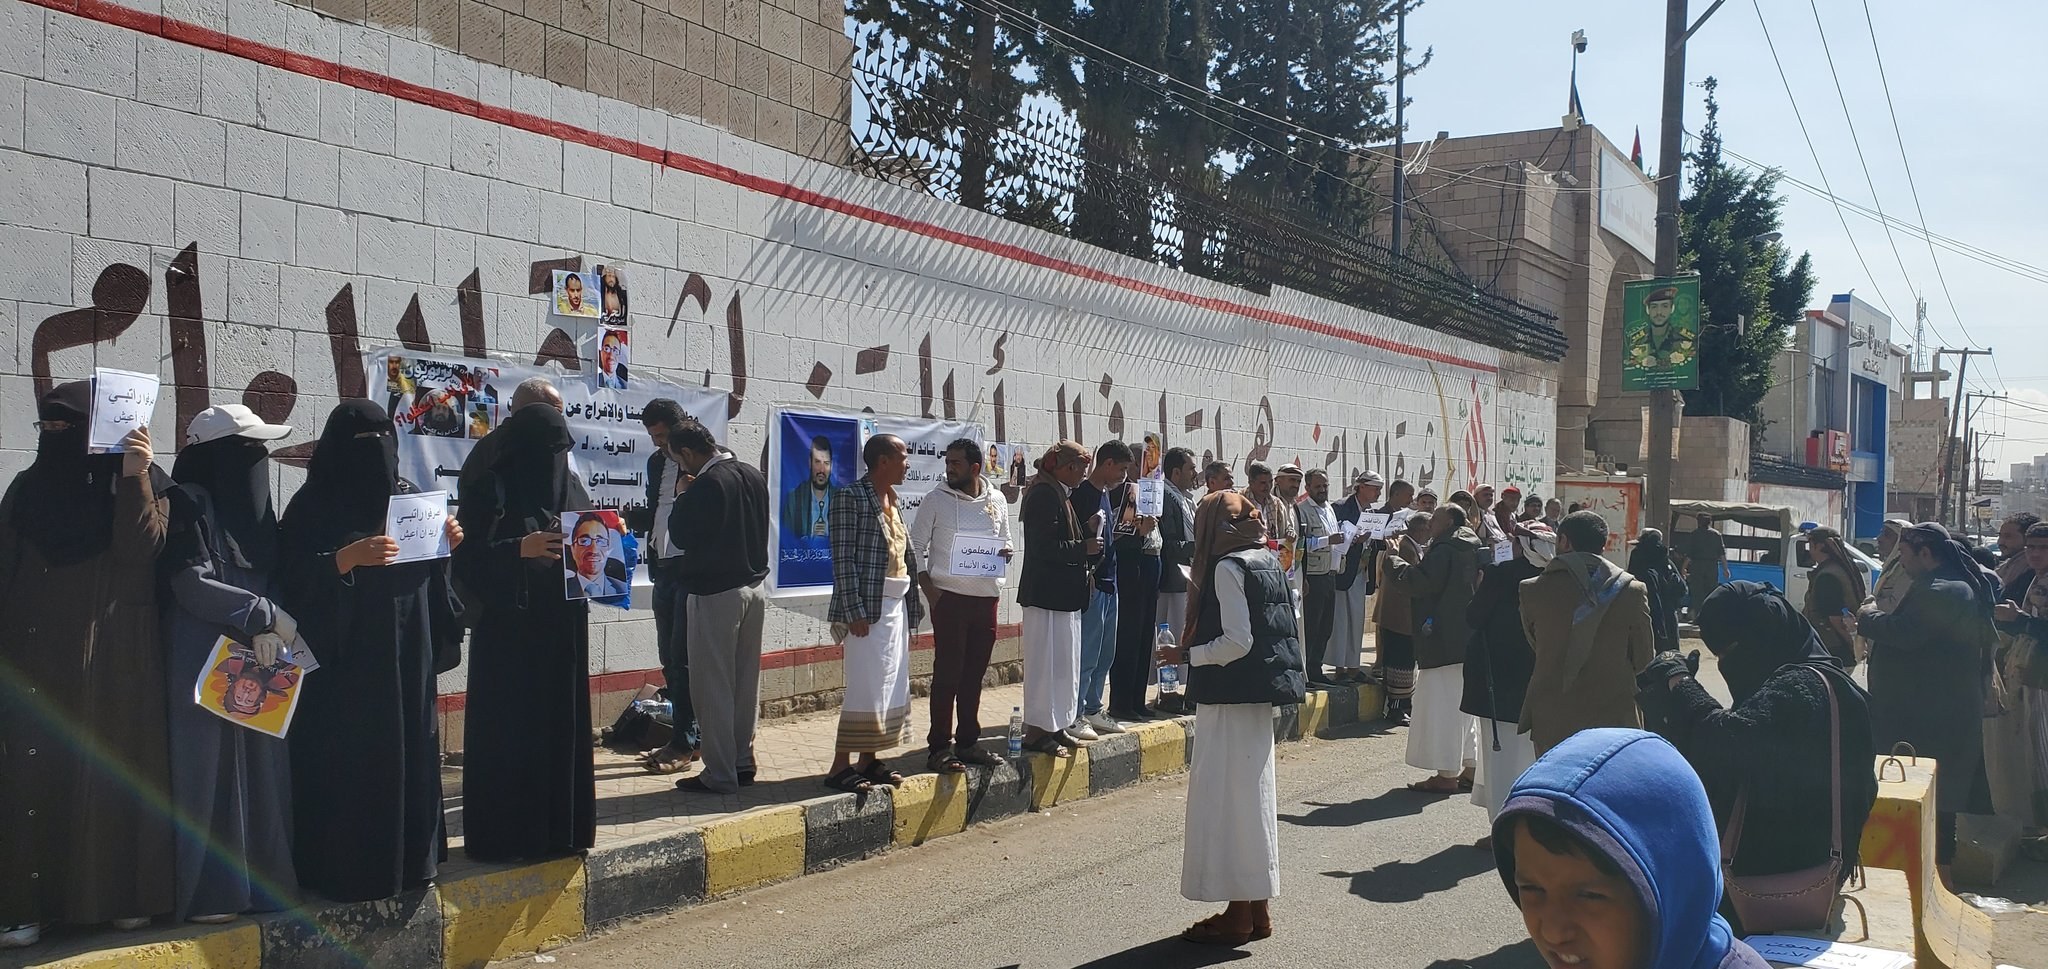  #65279;بعد 4 أشهر من الإخفاء القسري.. نادي المعلمين يقول إن الحوثيين أحالوا رئيسه إلى "المحكمة الجزائية" رغم تدهور حالته الصحية